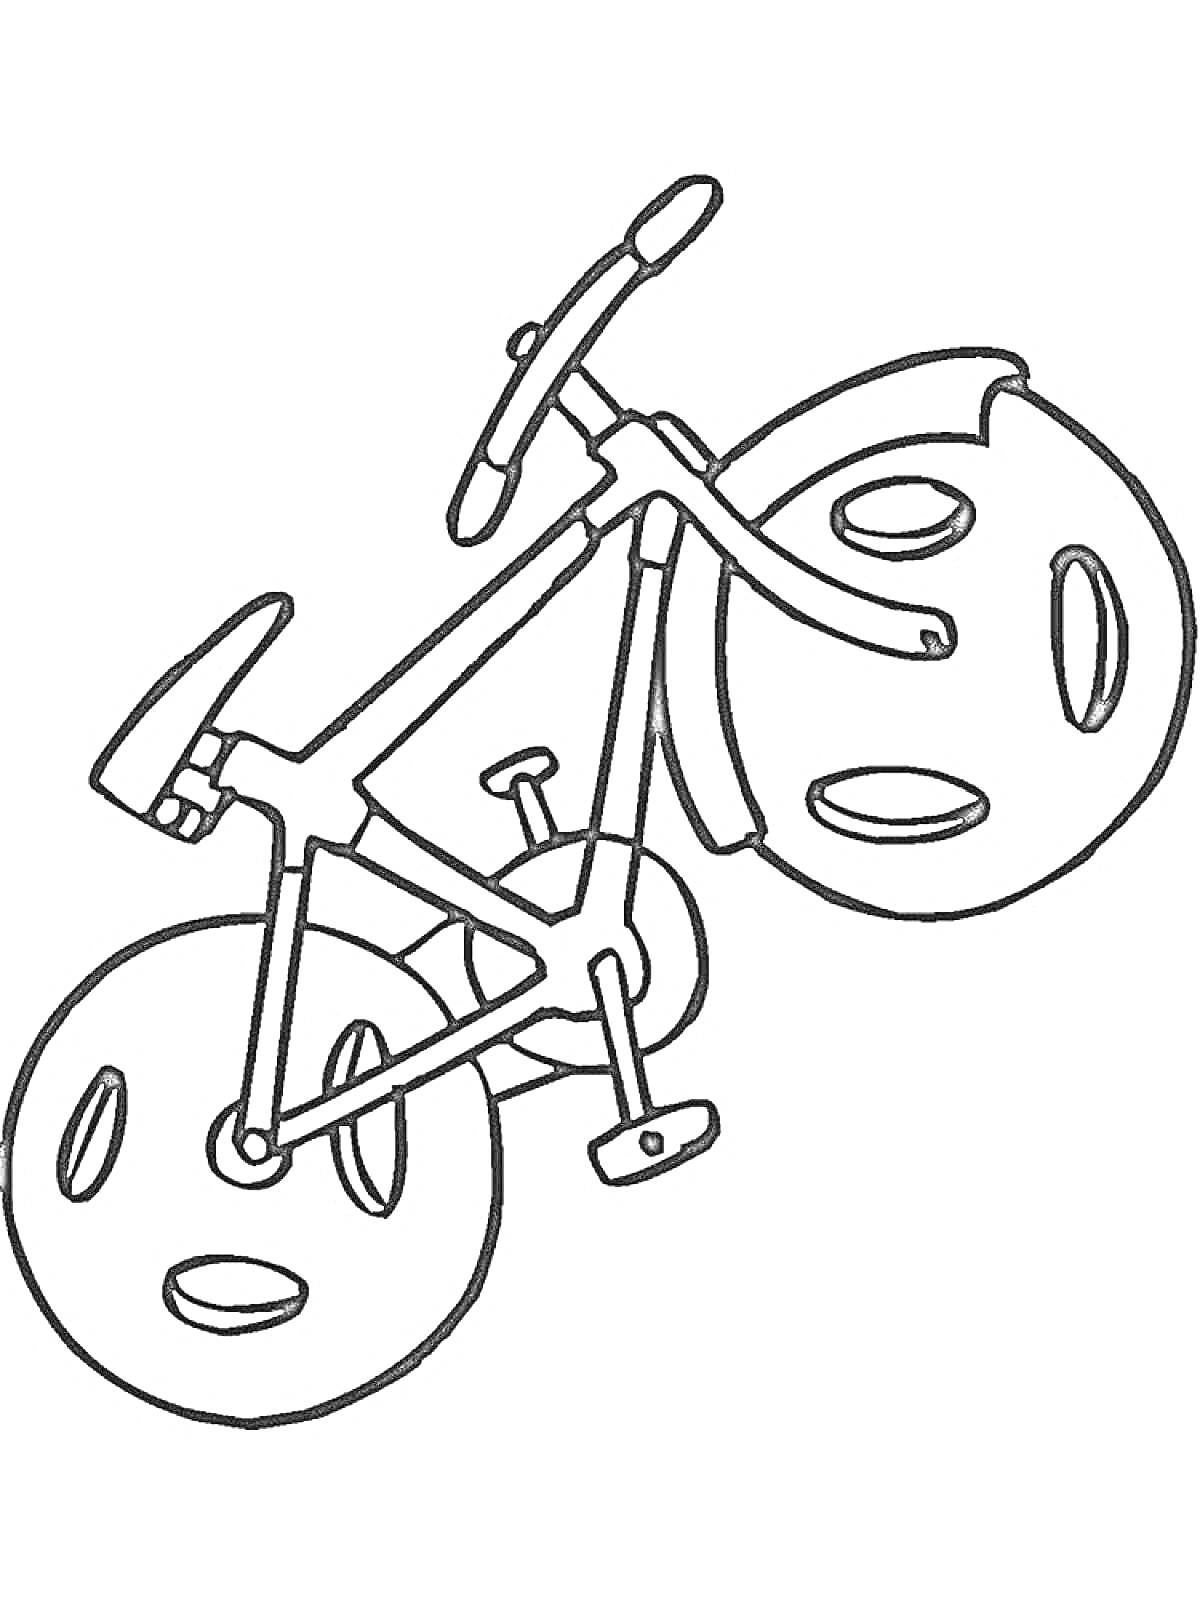 Раскраска Велосипед с большими колёсами и педалями